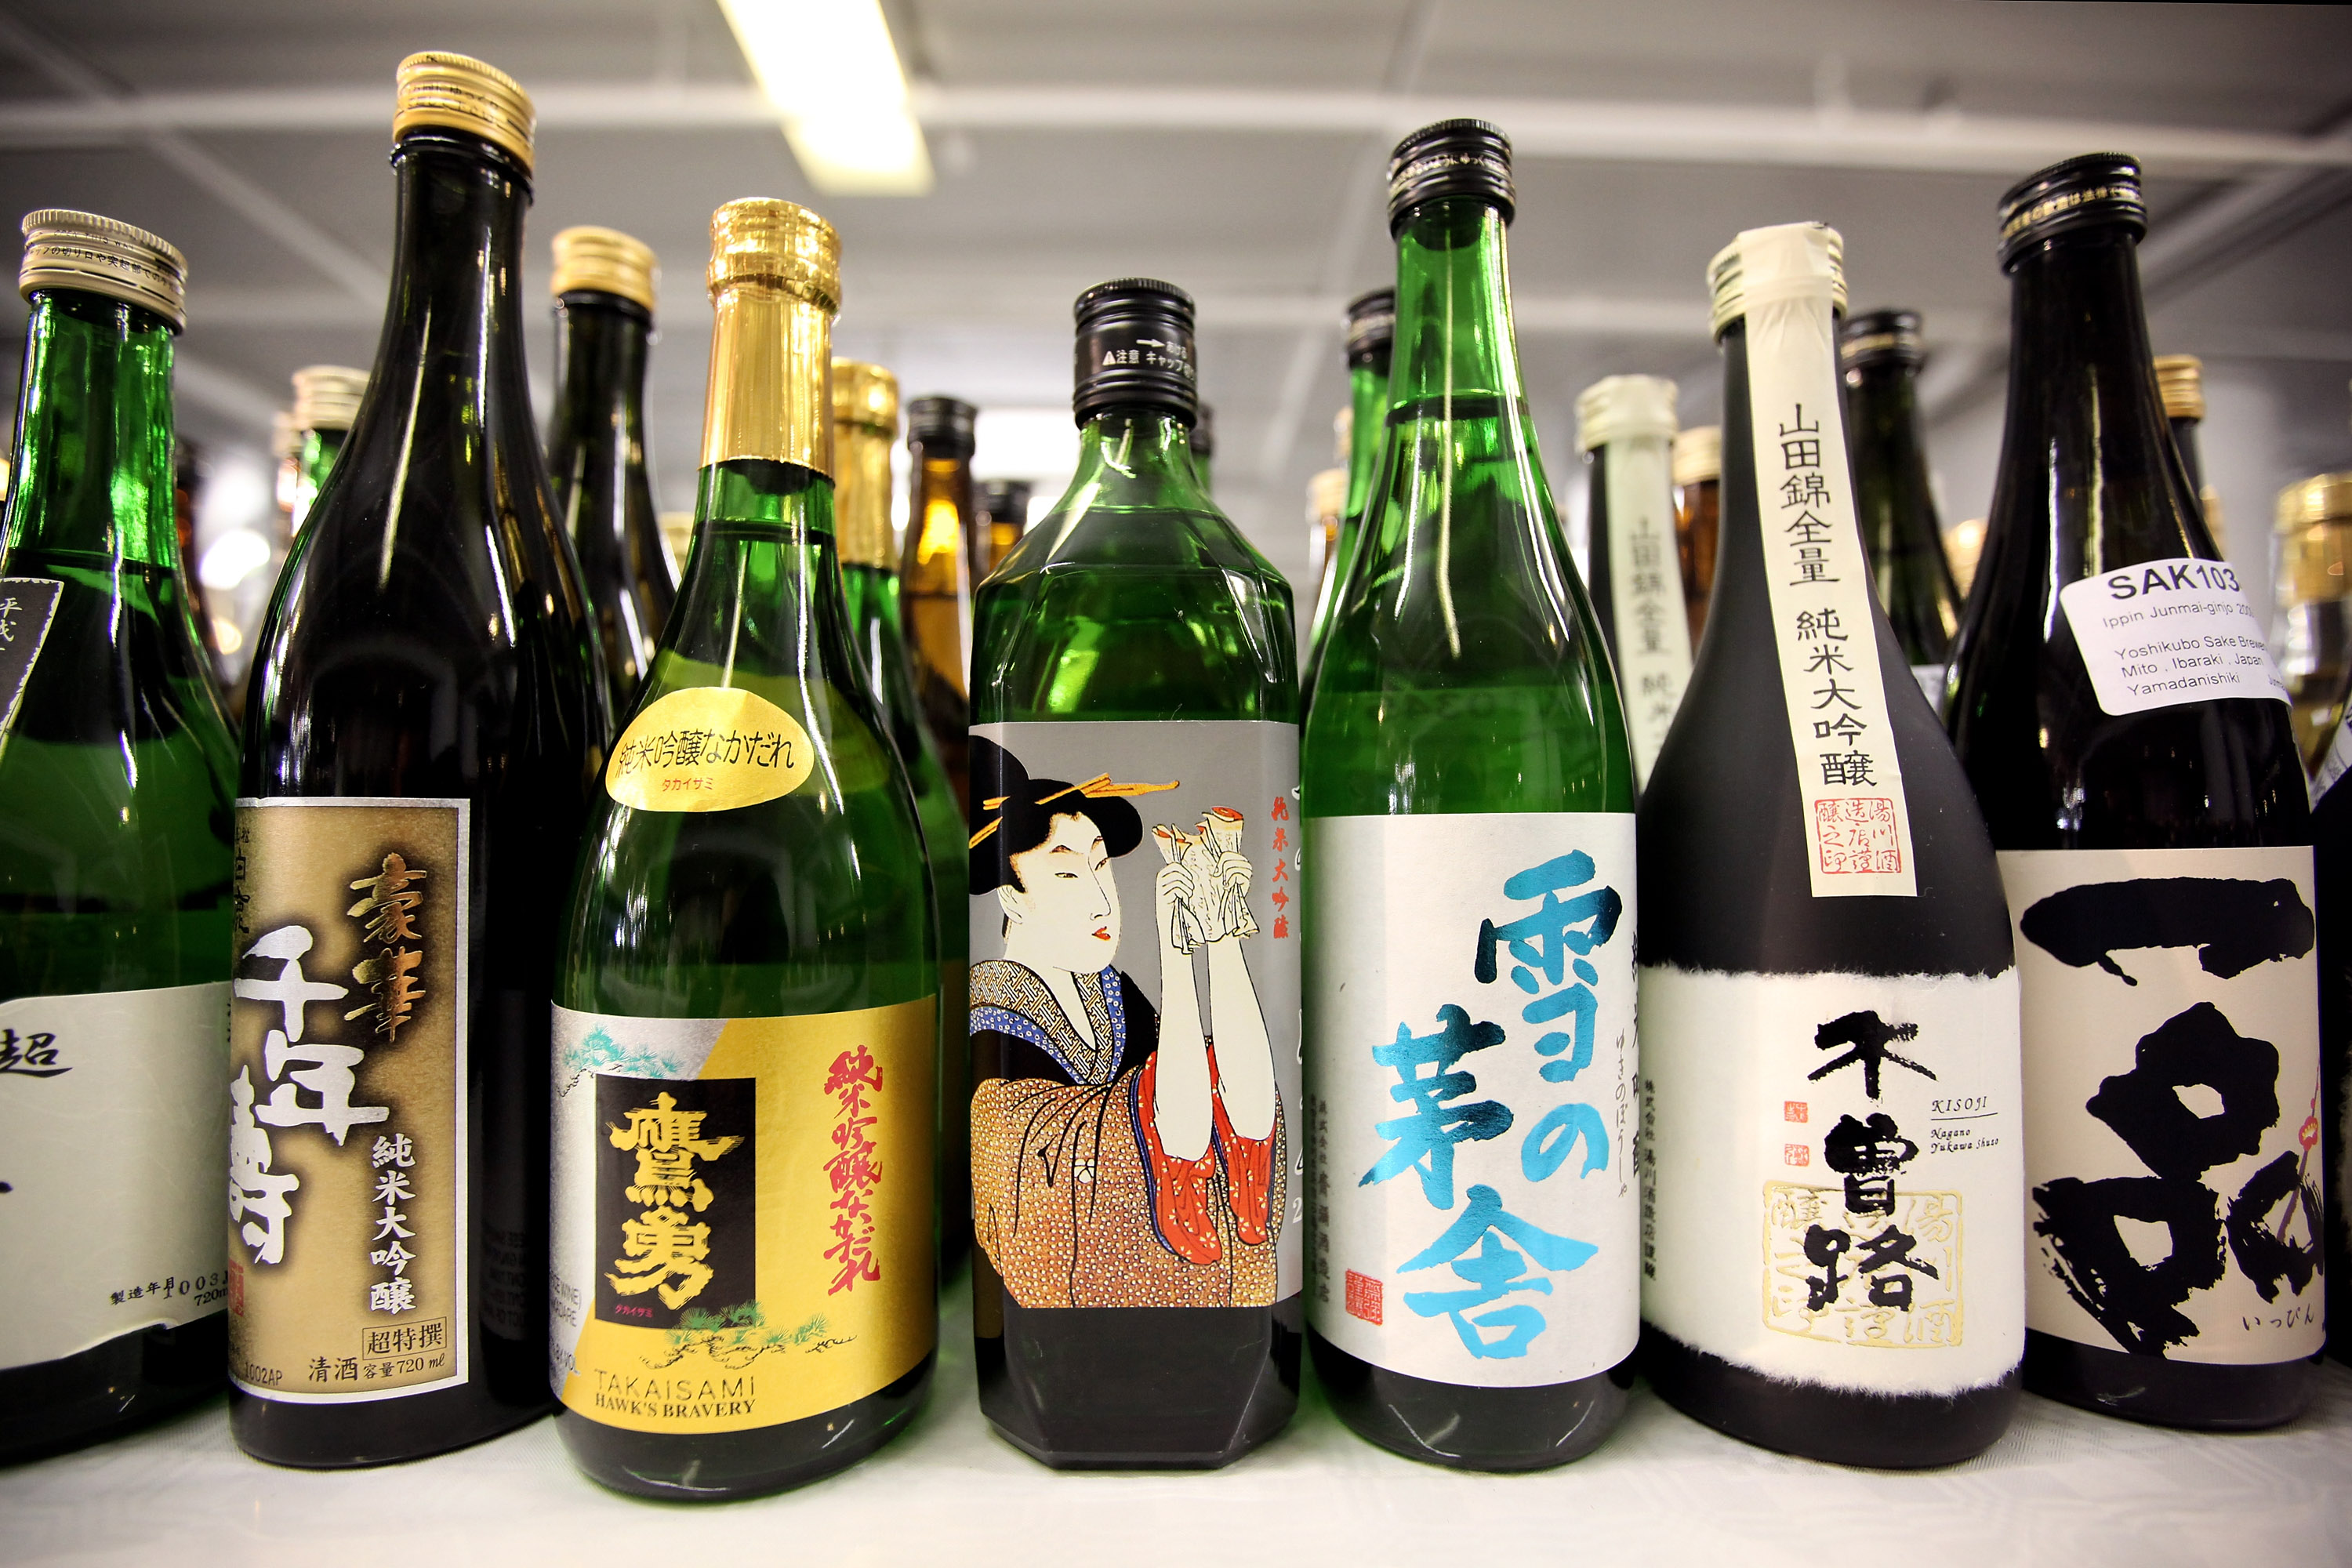 Bottles of sake.